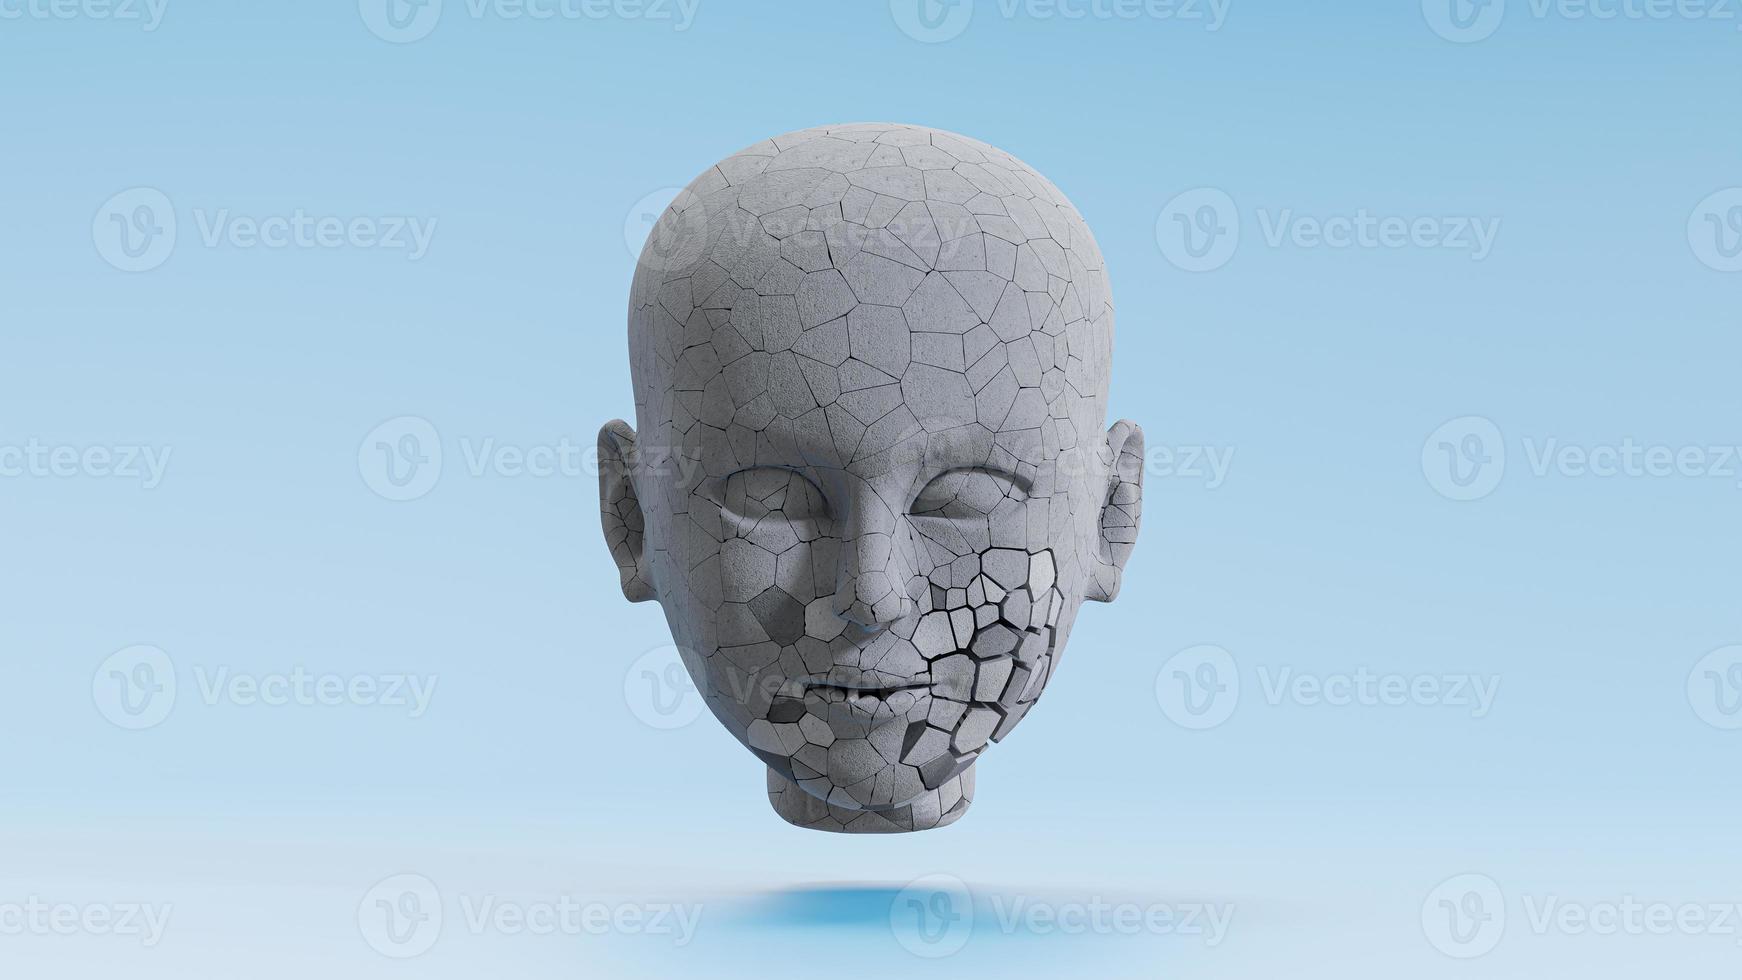 mänskligt ansikte gjord av cement har sprickbildning utseende på blå bakgrund. foto